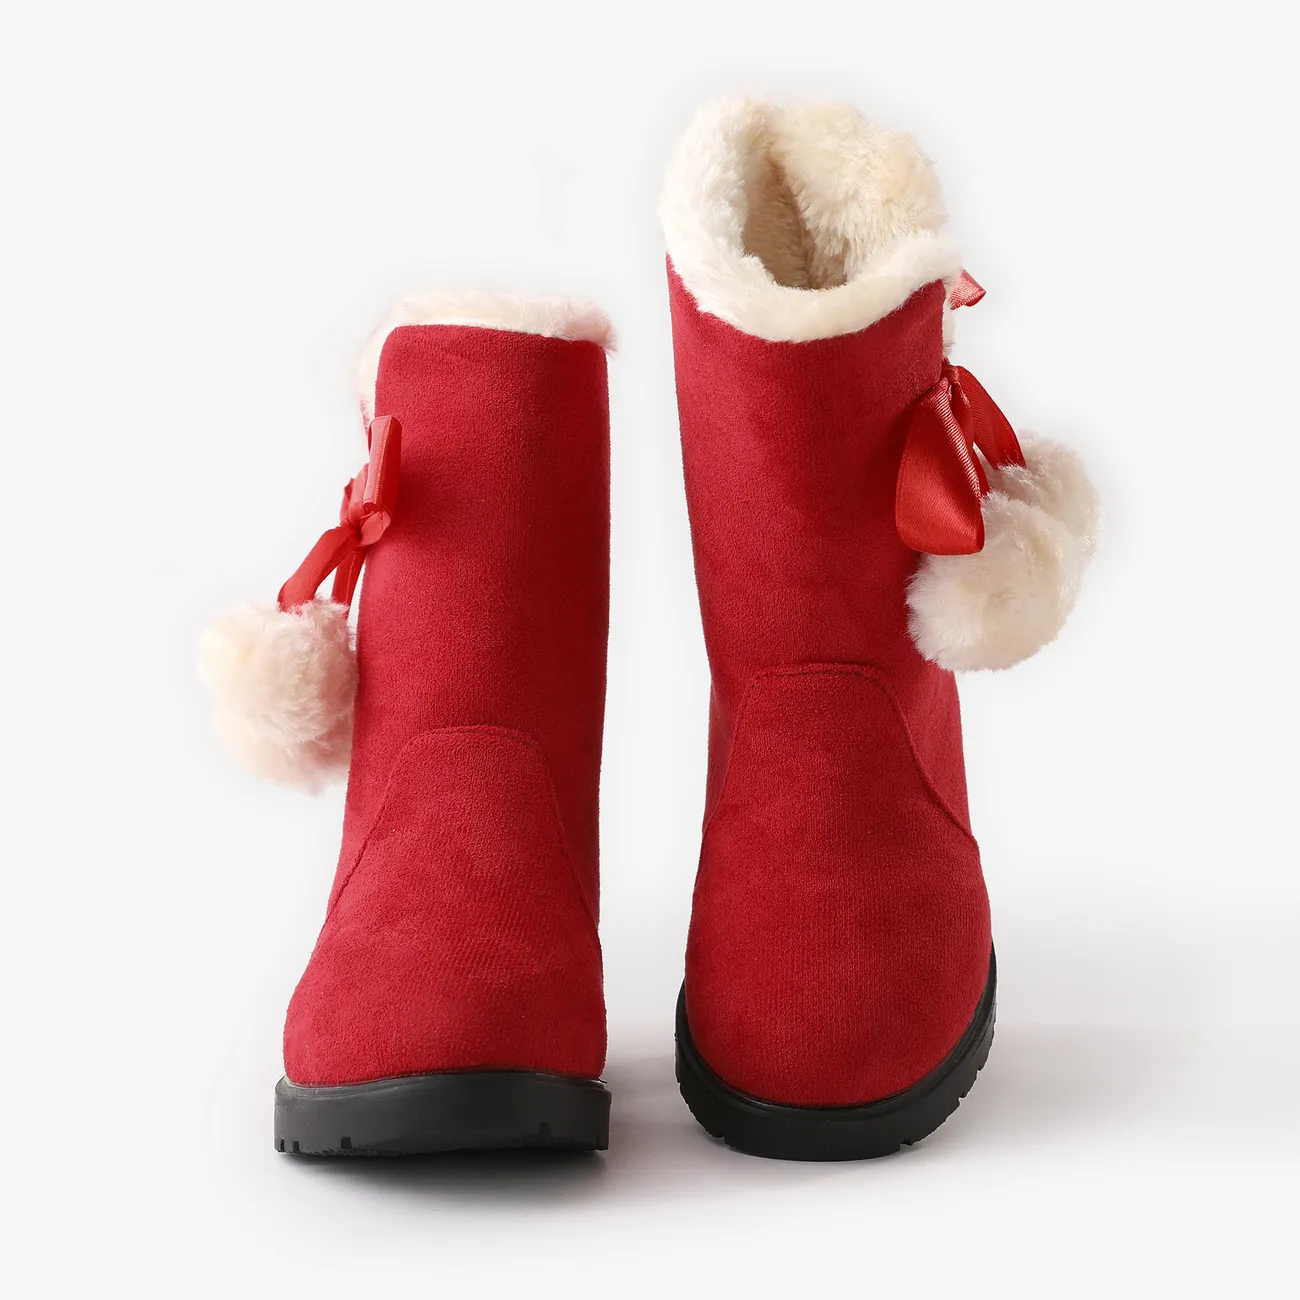 botas de nieve rojas con decoración de pompones navideños para niños pequeños / niños Rojo big image 1